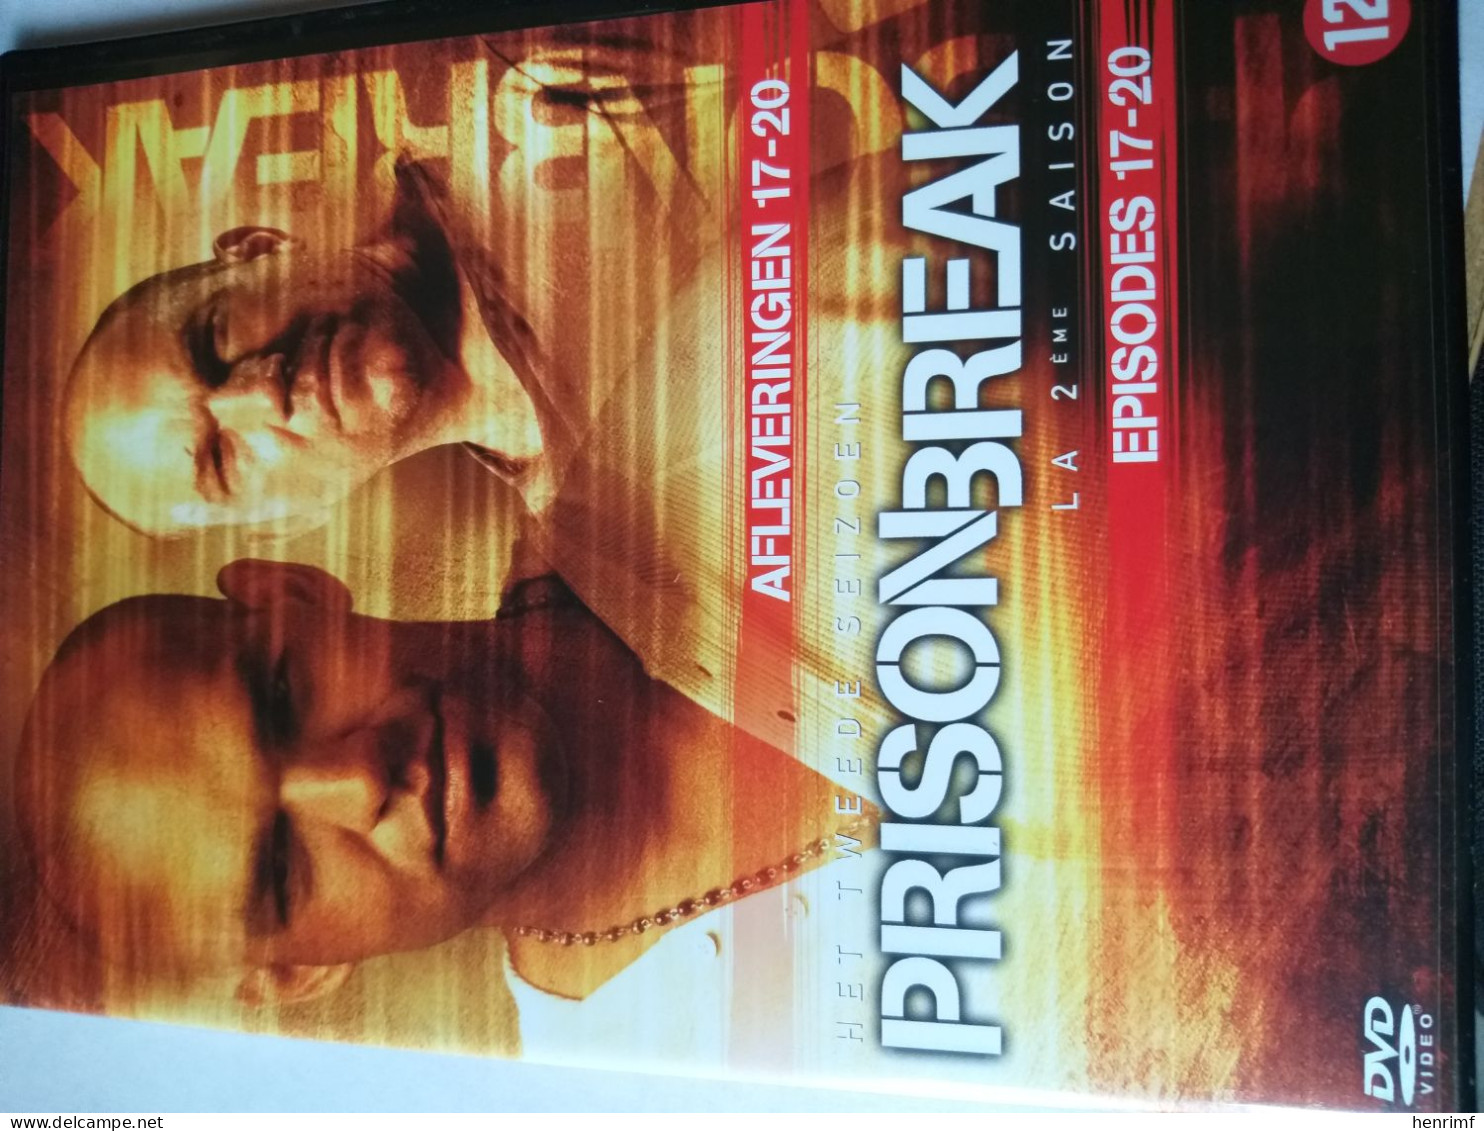 PRISONBREAK+ 6 DVD